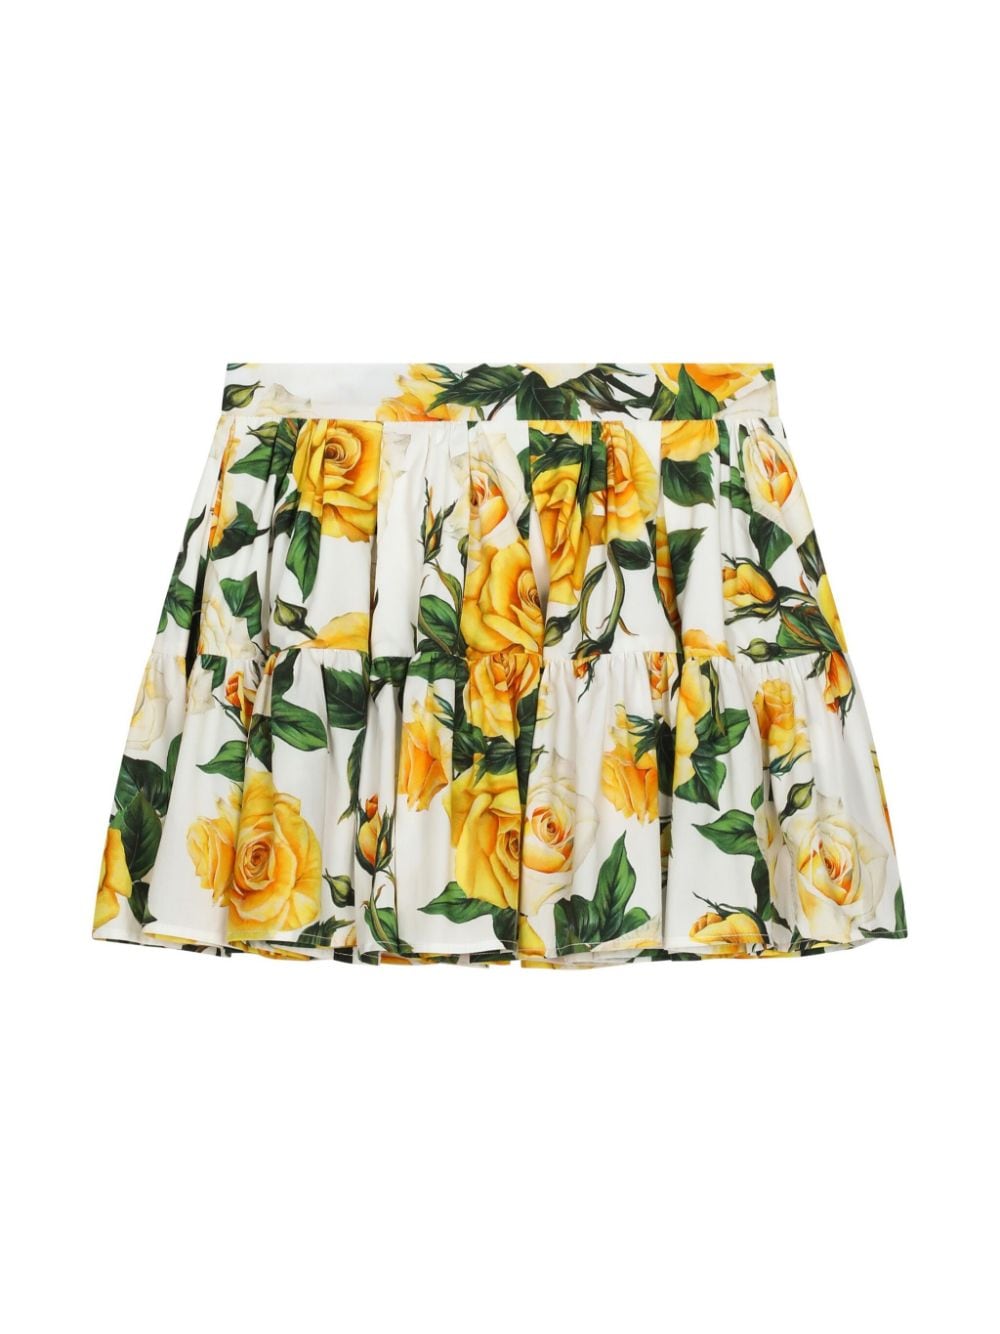 Rose print skirt